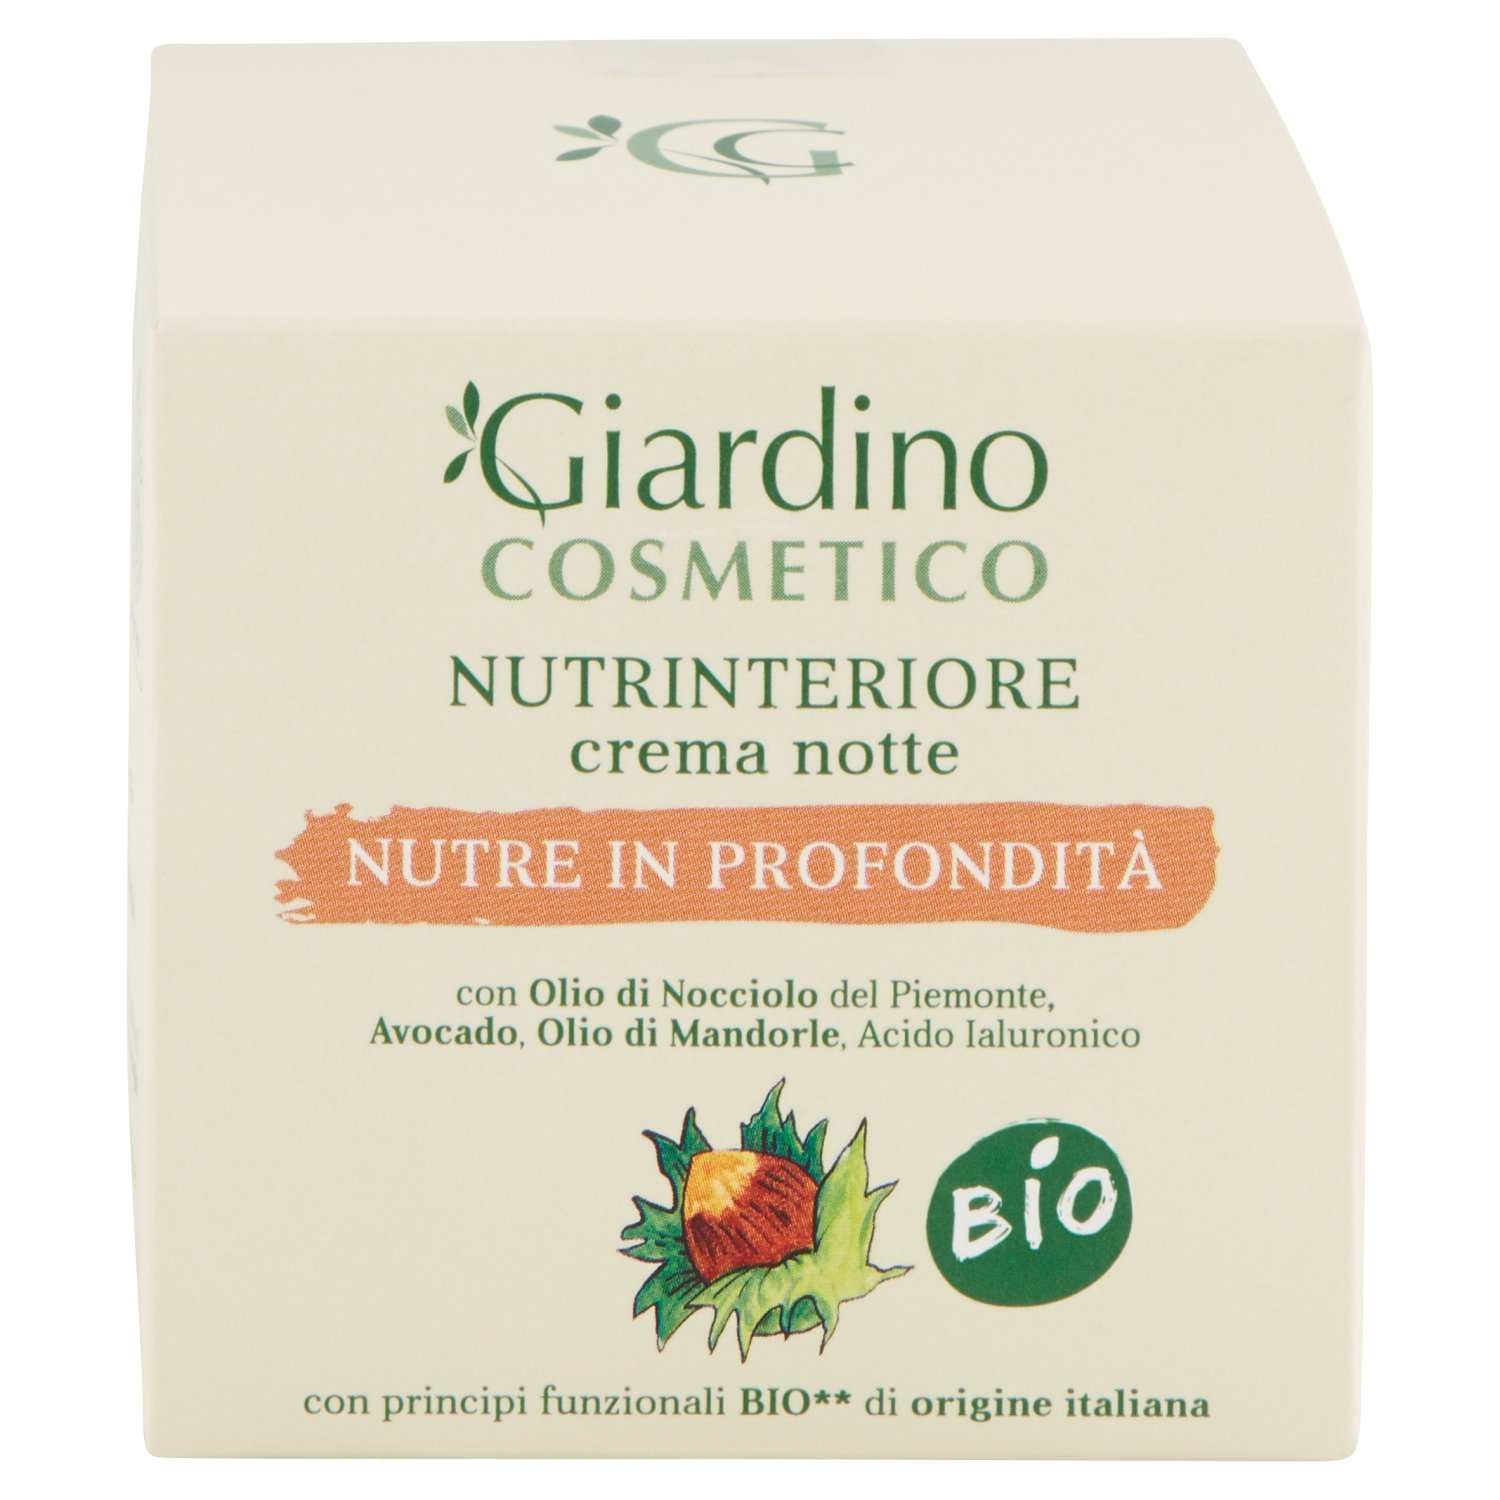 Giardino Cosmetico Bio Nutrinteriore Crema Notte - 50 ml